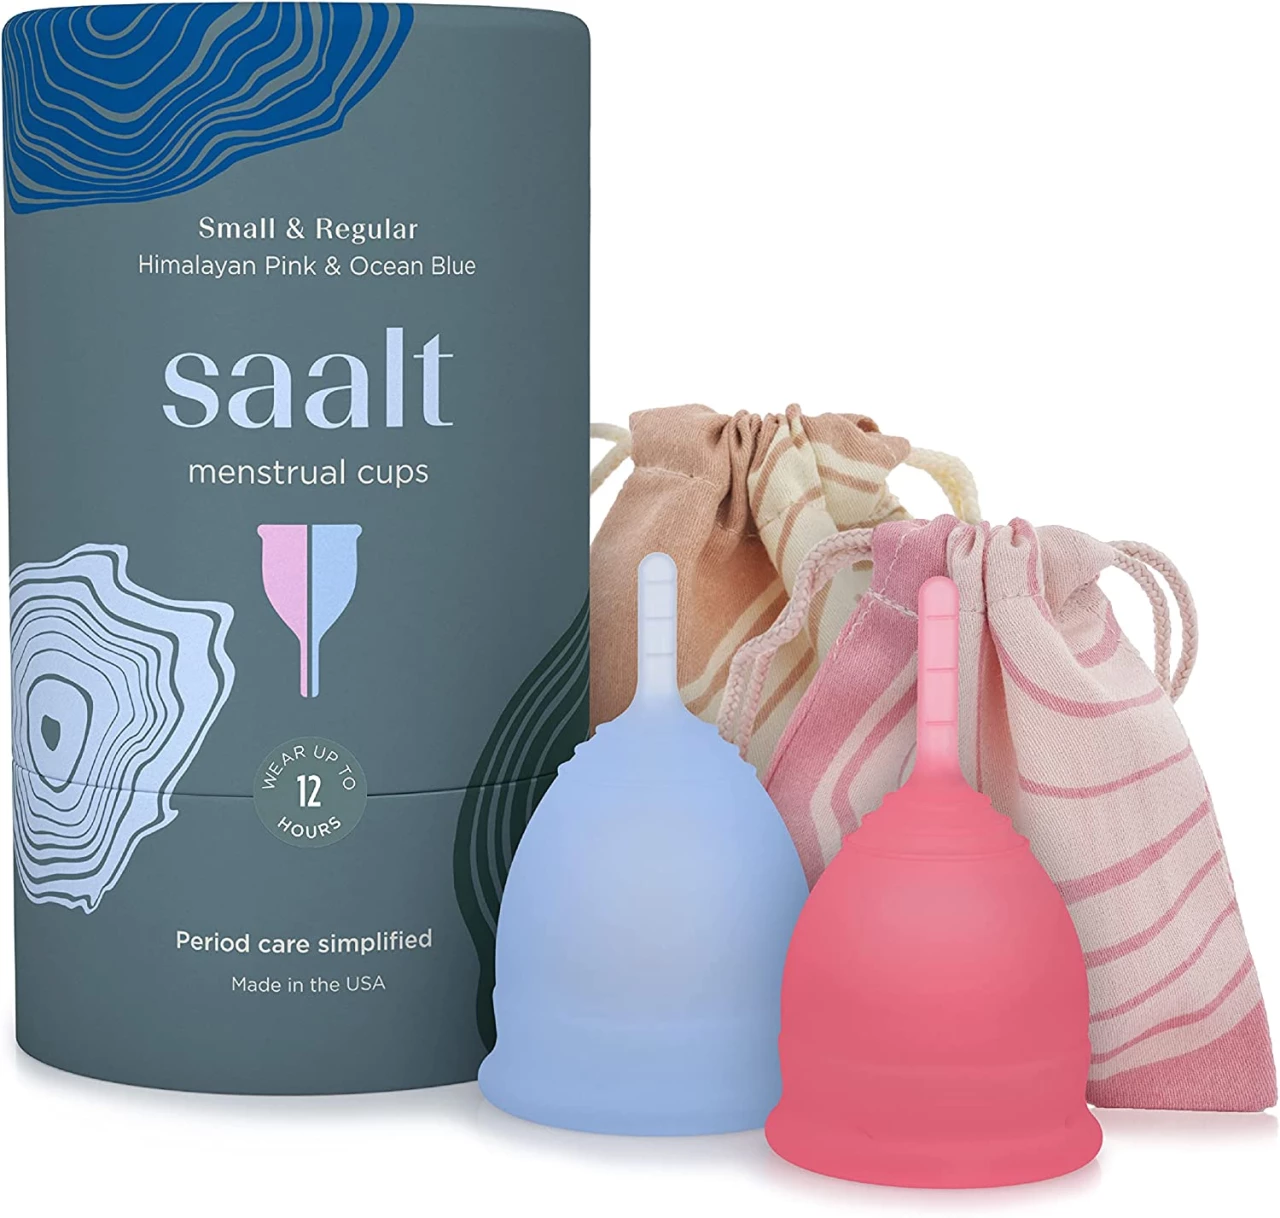 Copa menstrual Saalt en paquete de 2 unidades - La copa más cómoda para el período - Copa n.º 1 - Suave, flexible y reutilizable - Silicona de grado médico - Fabricada en EE. UU.